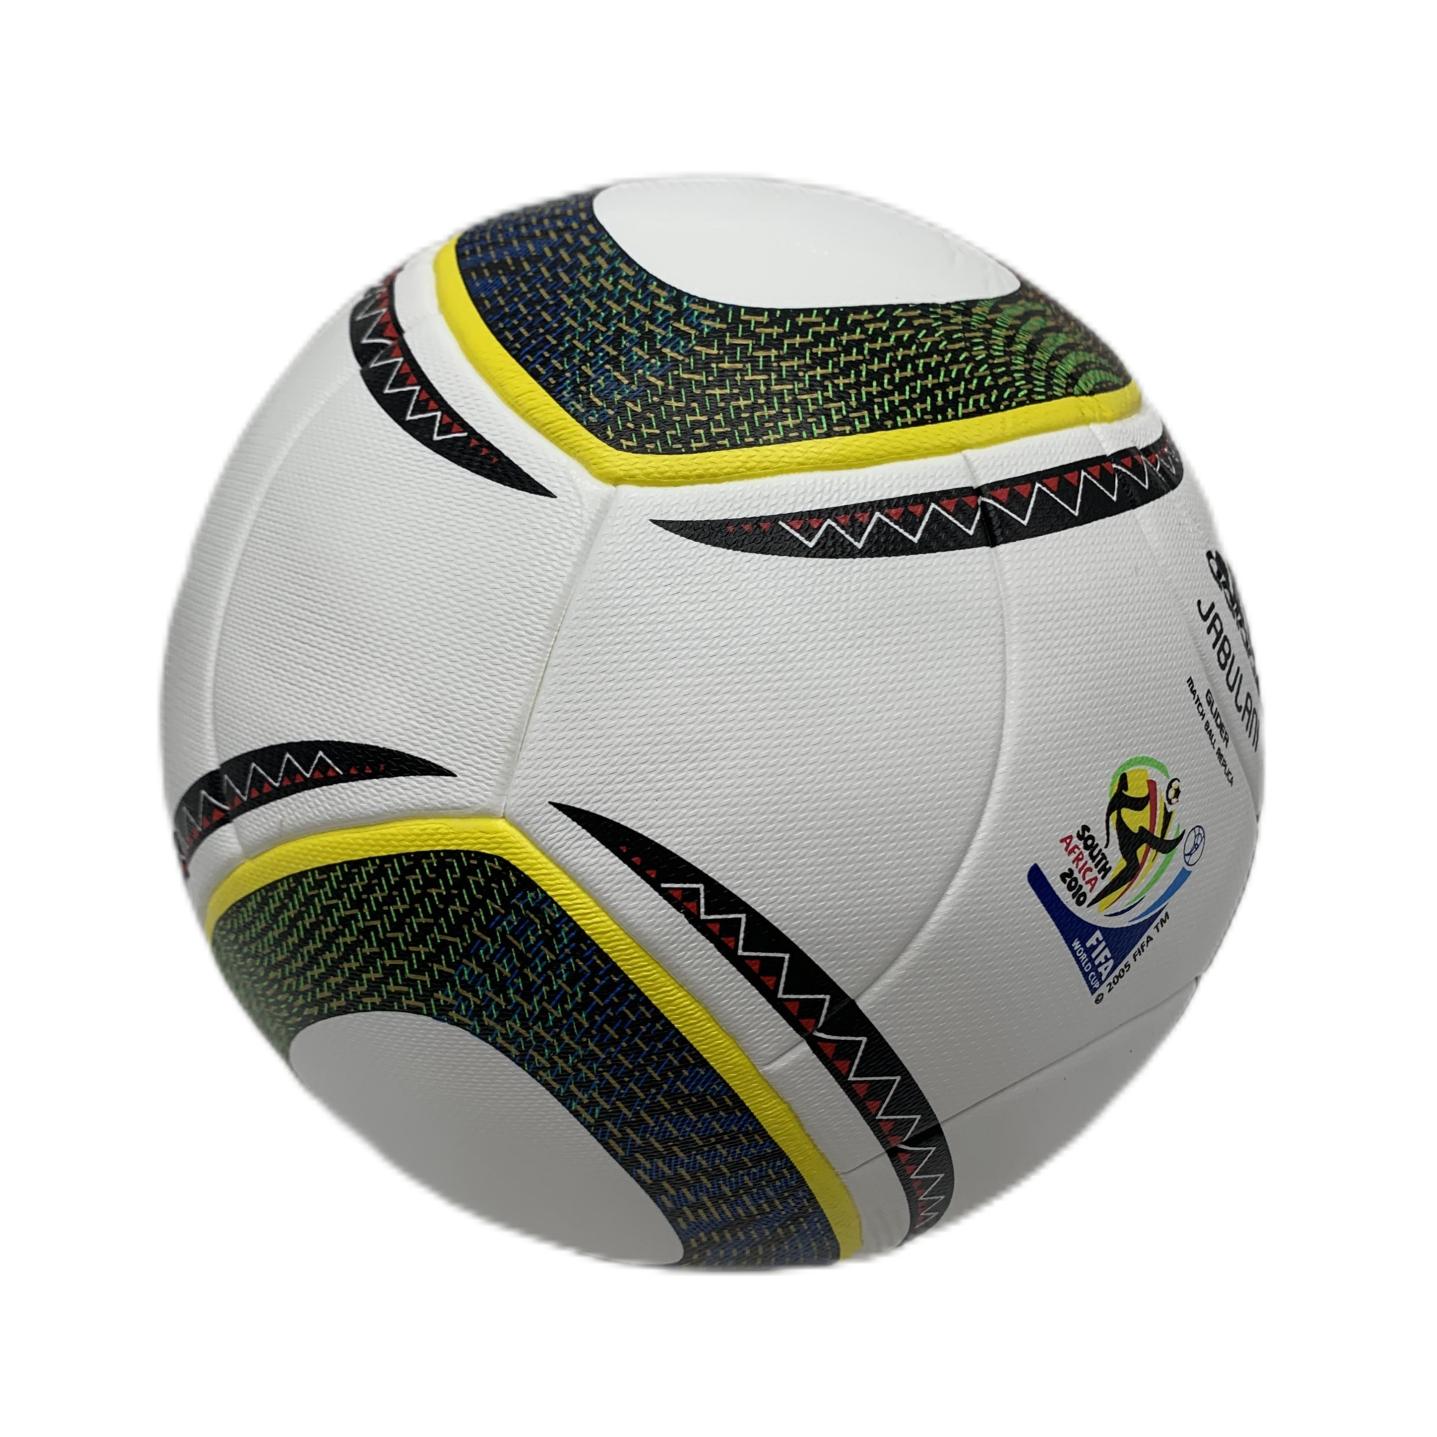 Futbol topları toptan 2022 r dünya otantik boyutu 5 maç futbol kaplama malzemesi hilm ve al rihla jabulani brazuca32323